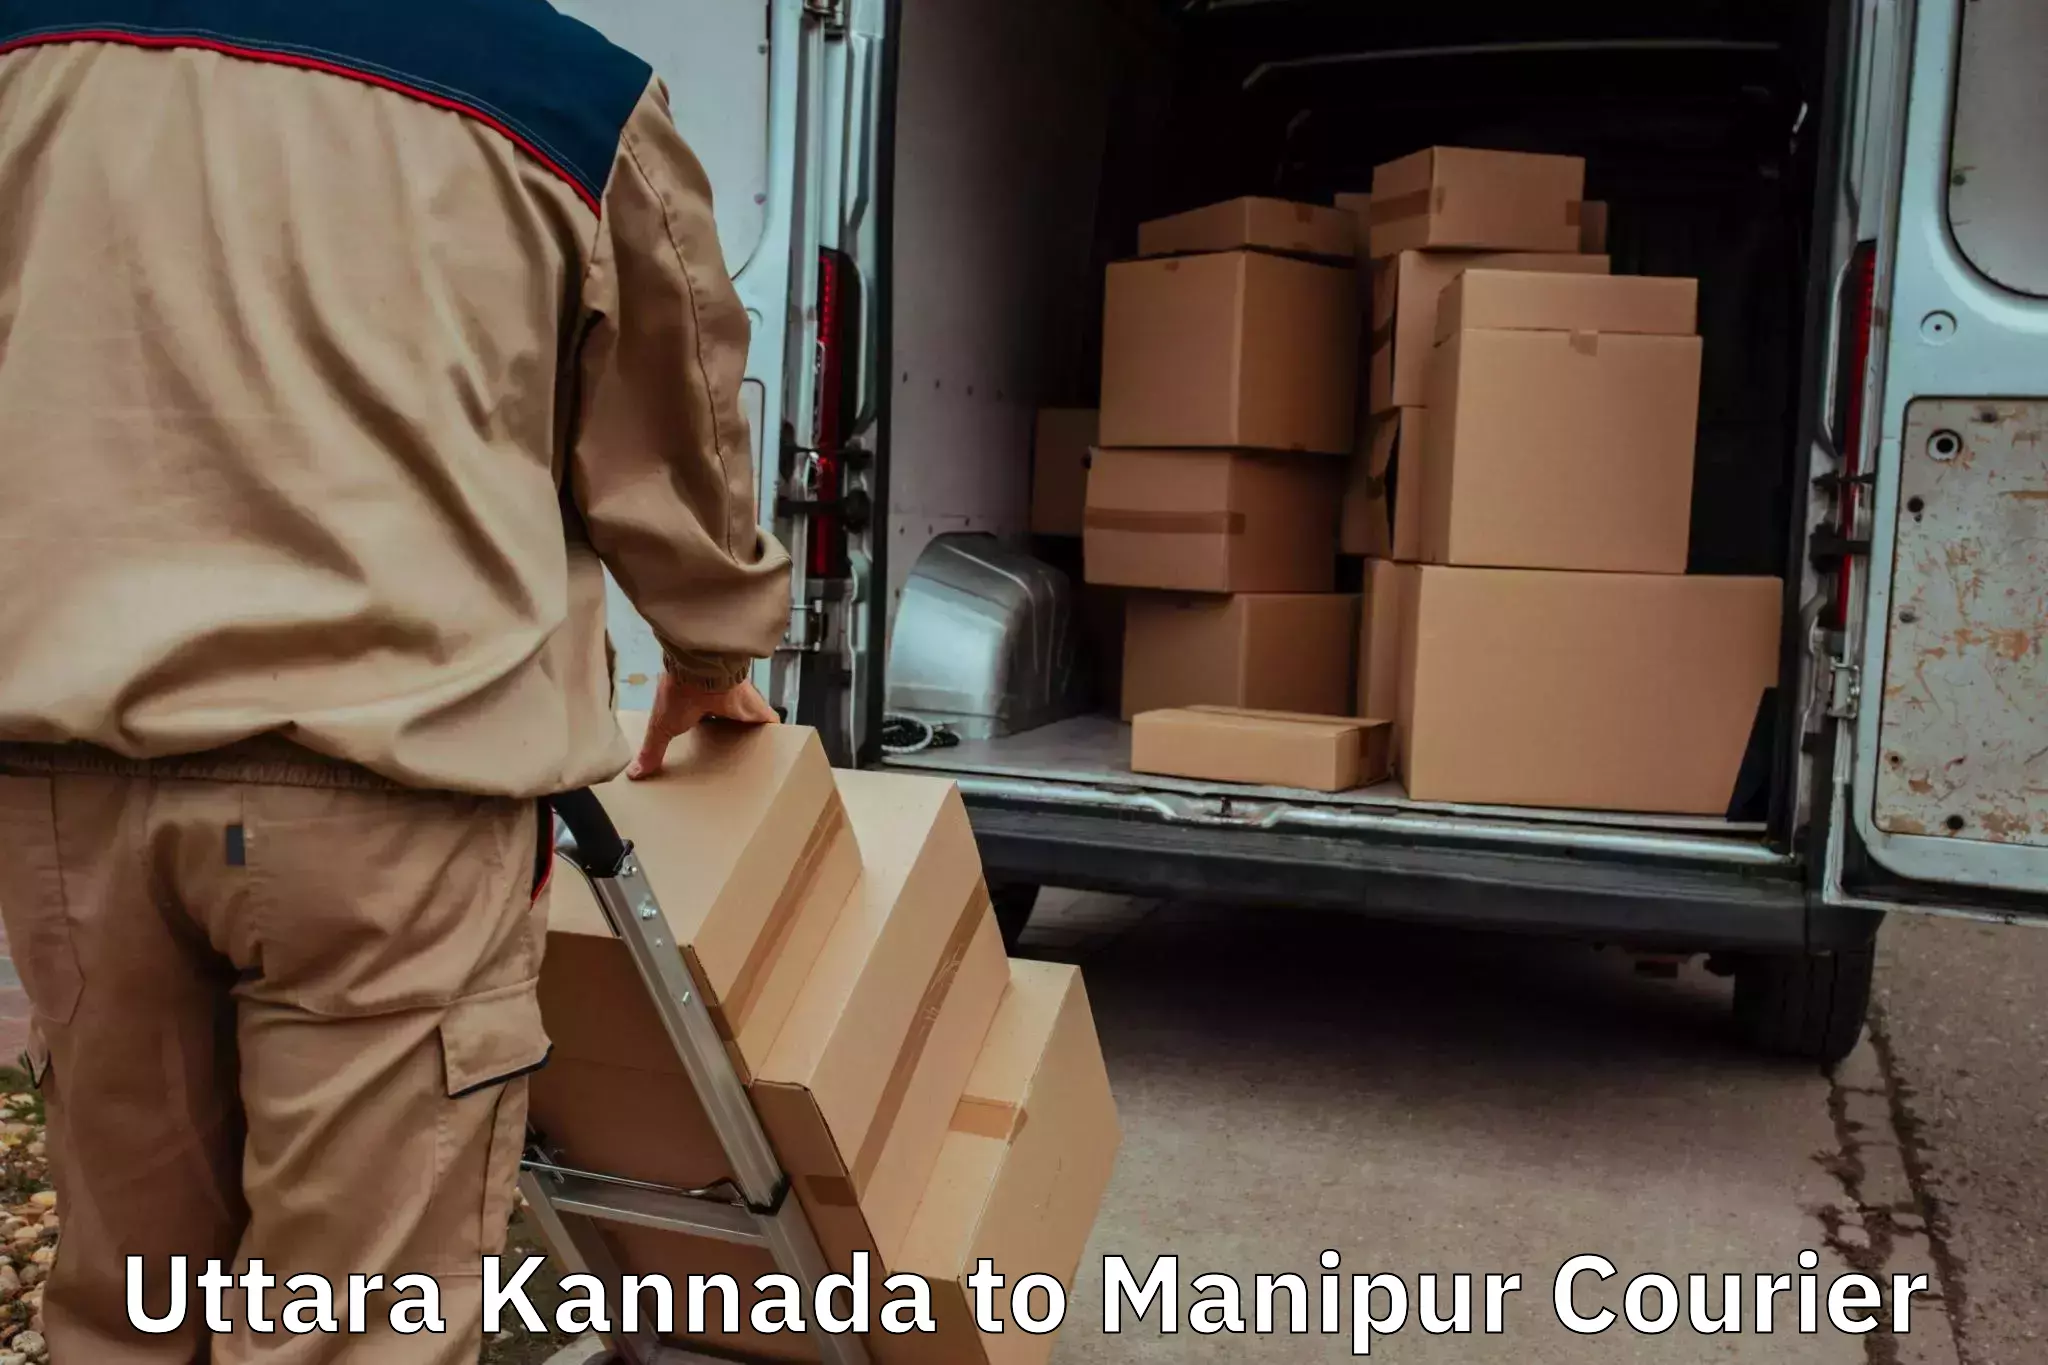 Door-to-door relocation services in Uttara Kannada to Chandel